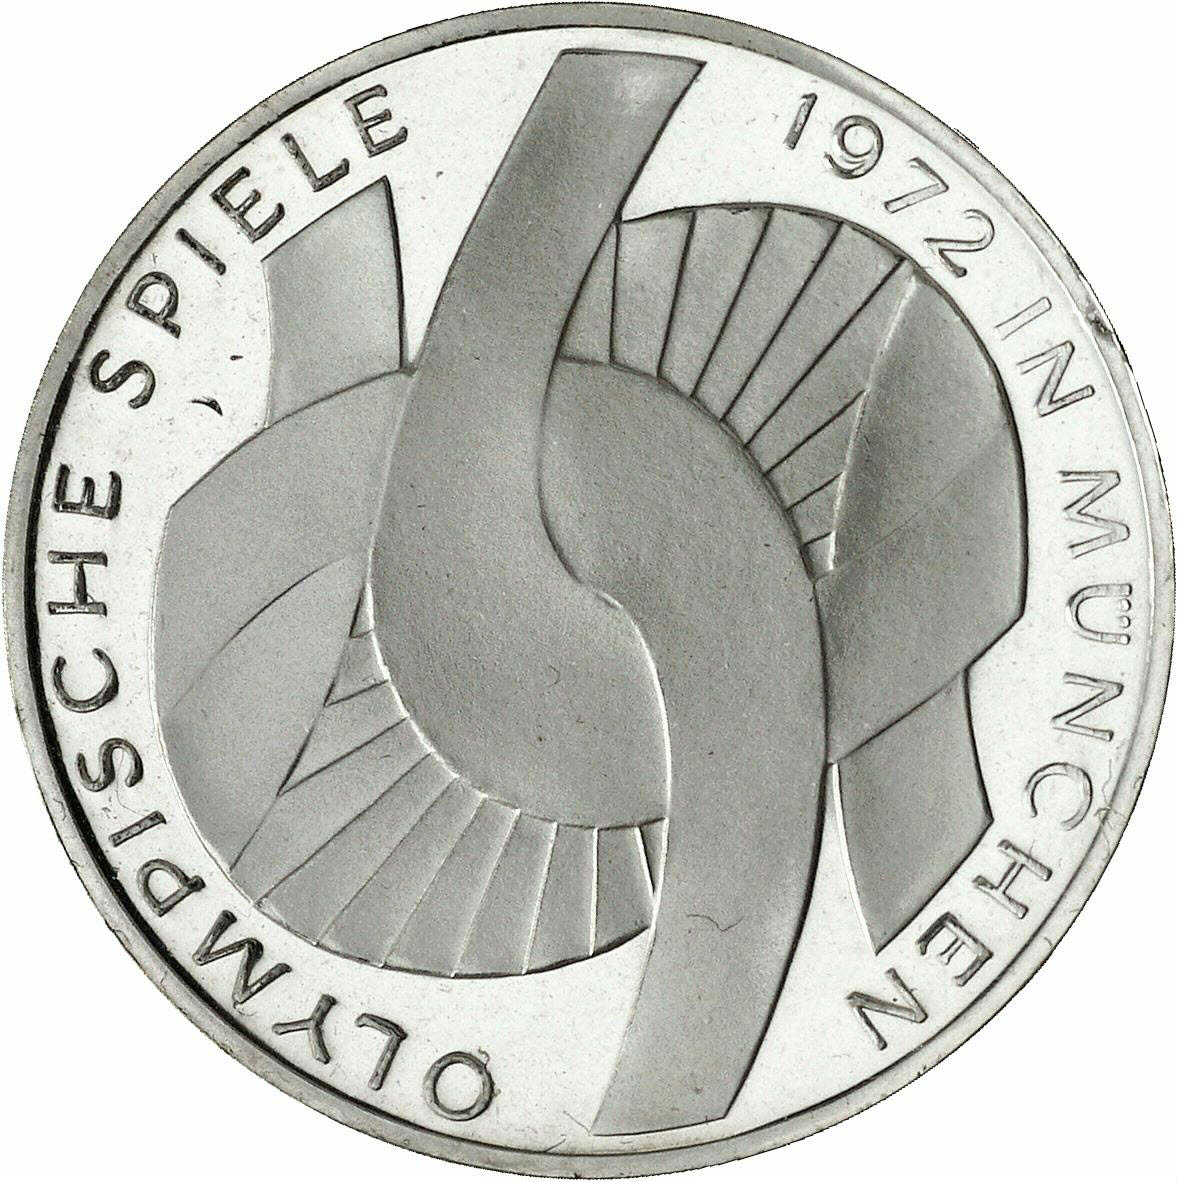 DE 10 Deutsche Mark 1972 D